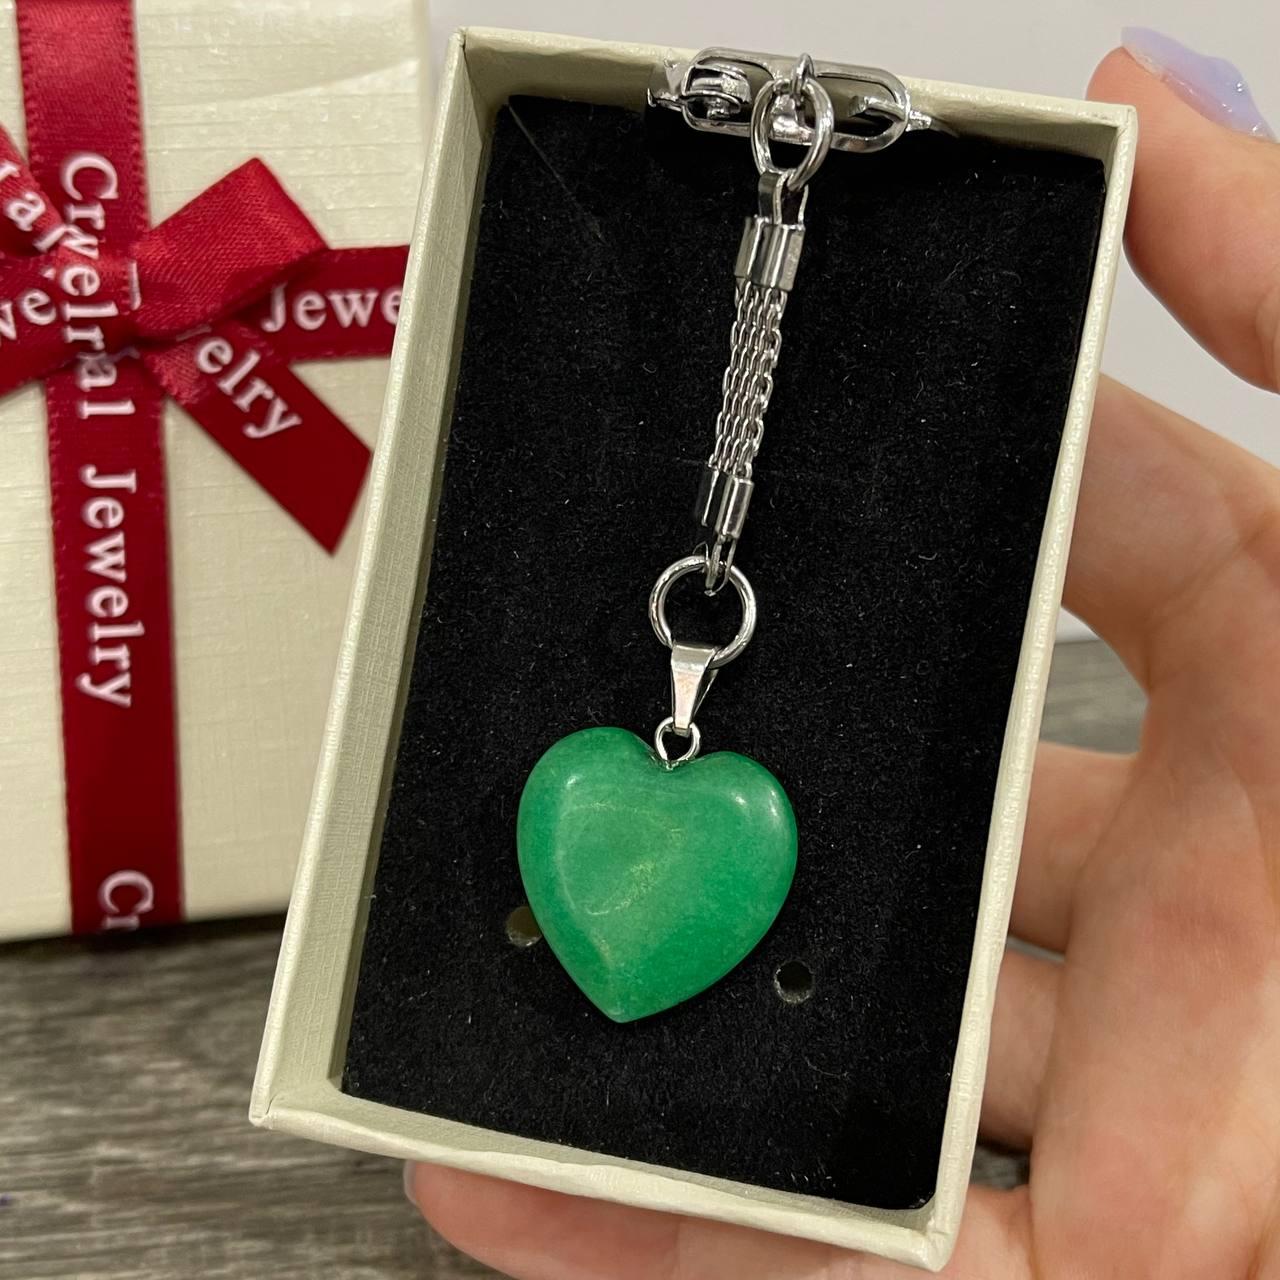 Подарунок хлопцю, дівчині - кулон з натурального каменю Хризопраз у формі сердечка на брелоку для ключів в коробочці